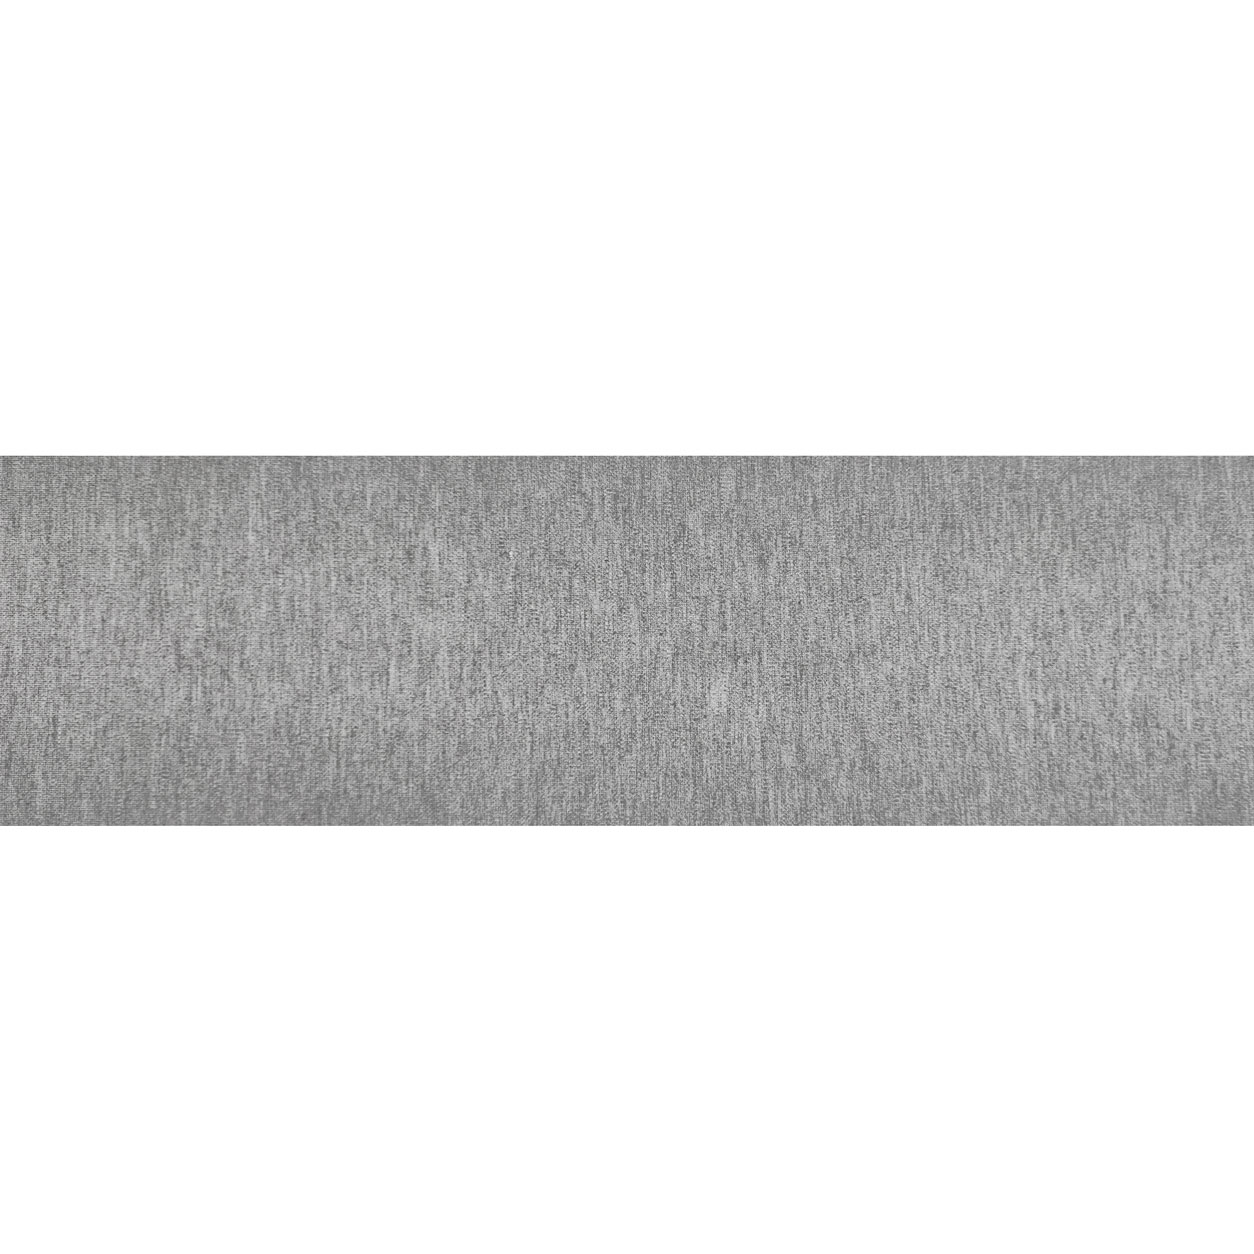 bordo-bielastico-grigio-chiaro-melange